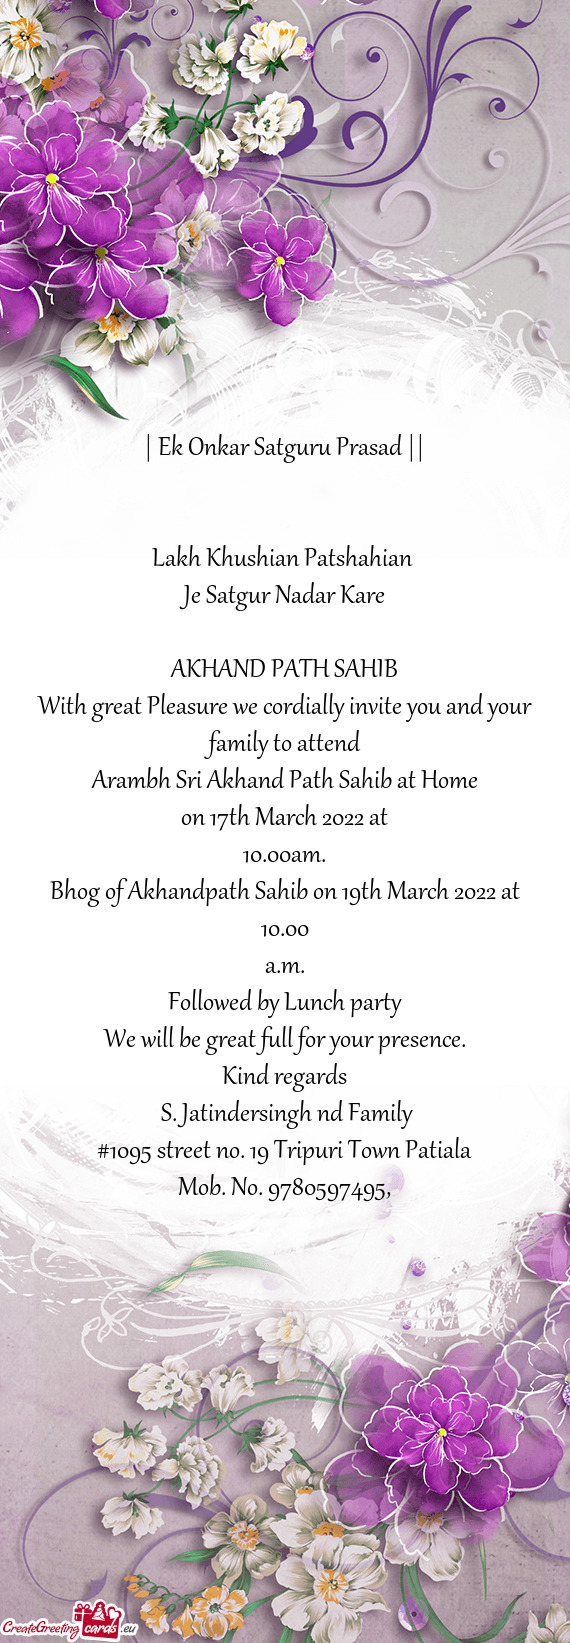 Bhog of Akhandpath Sahib on 19th March 2022 at 10.00